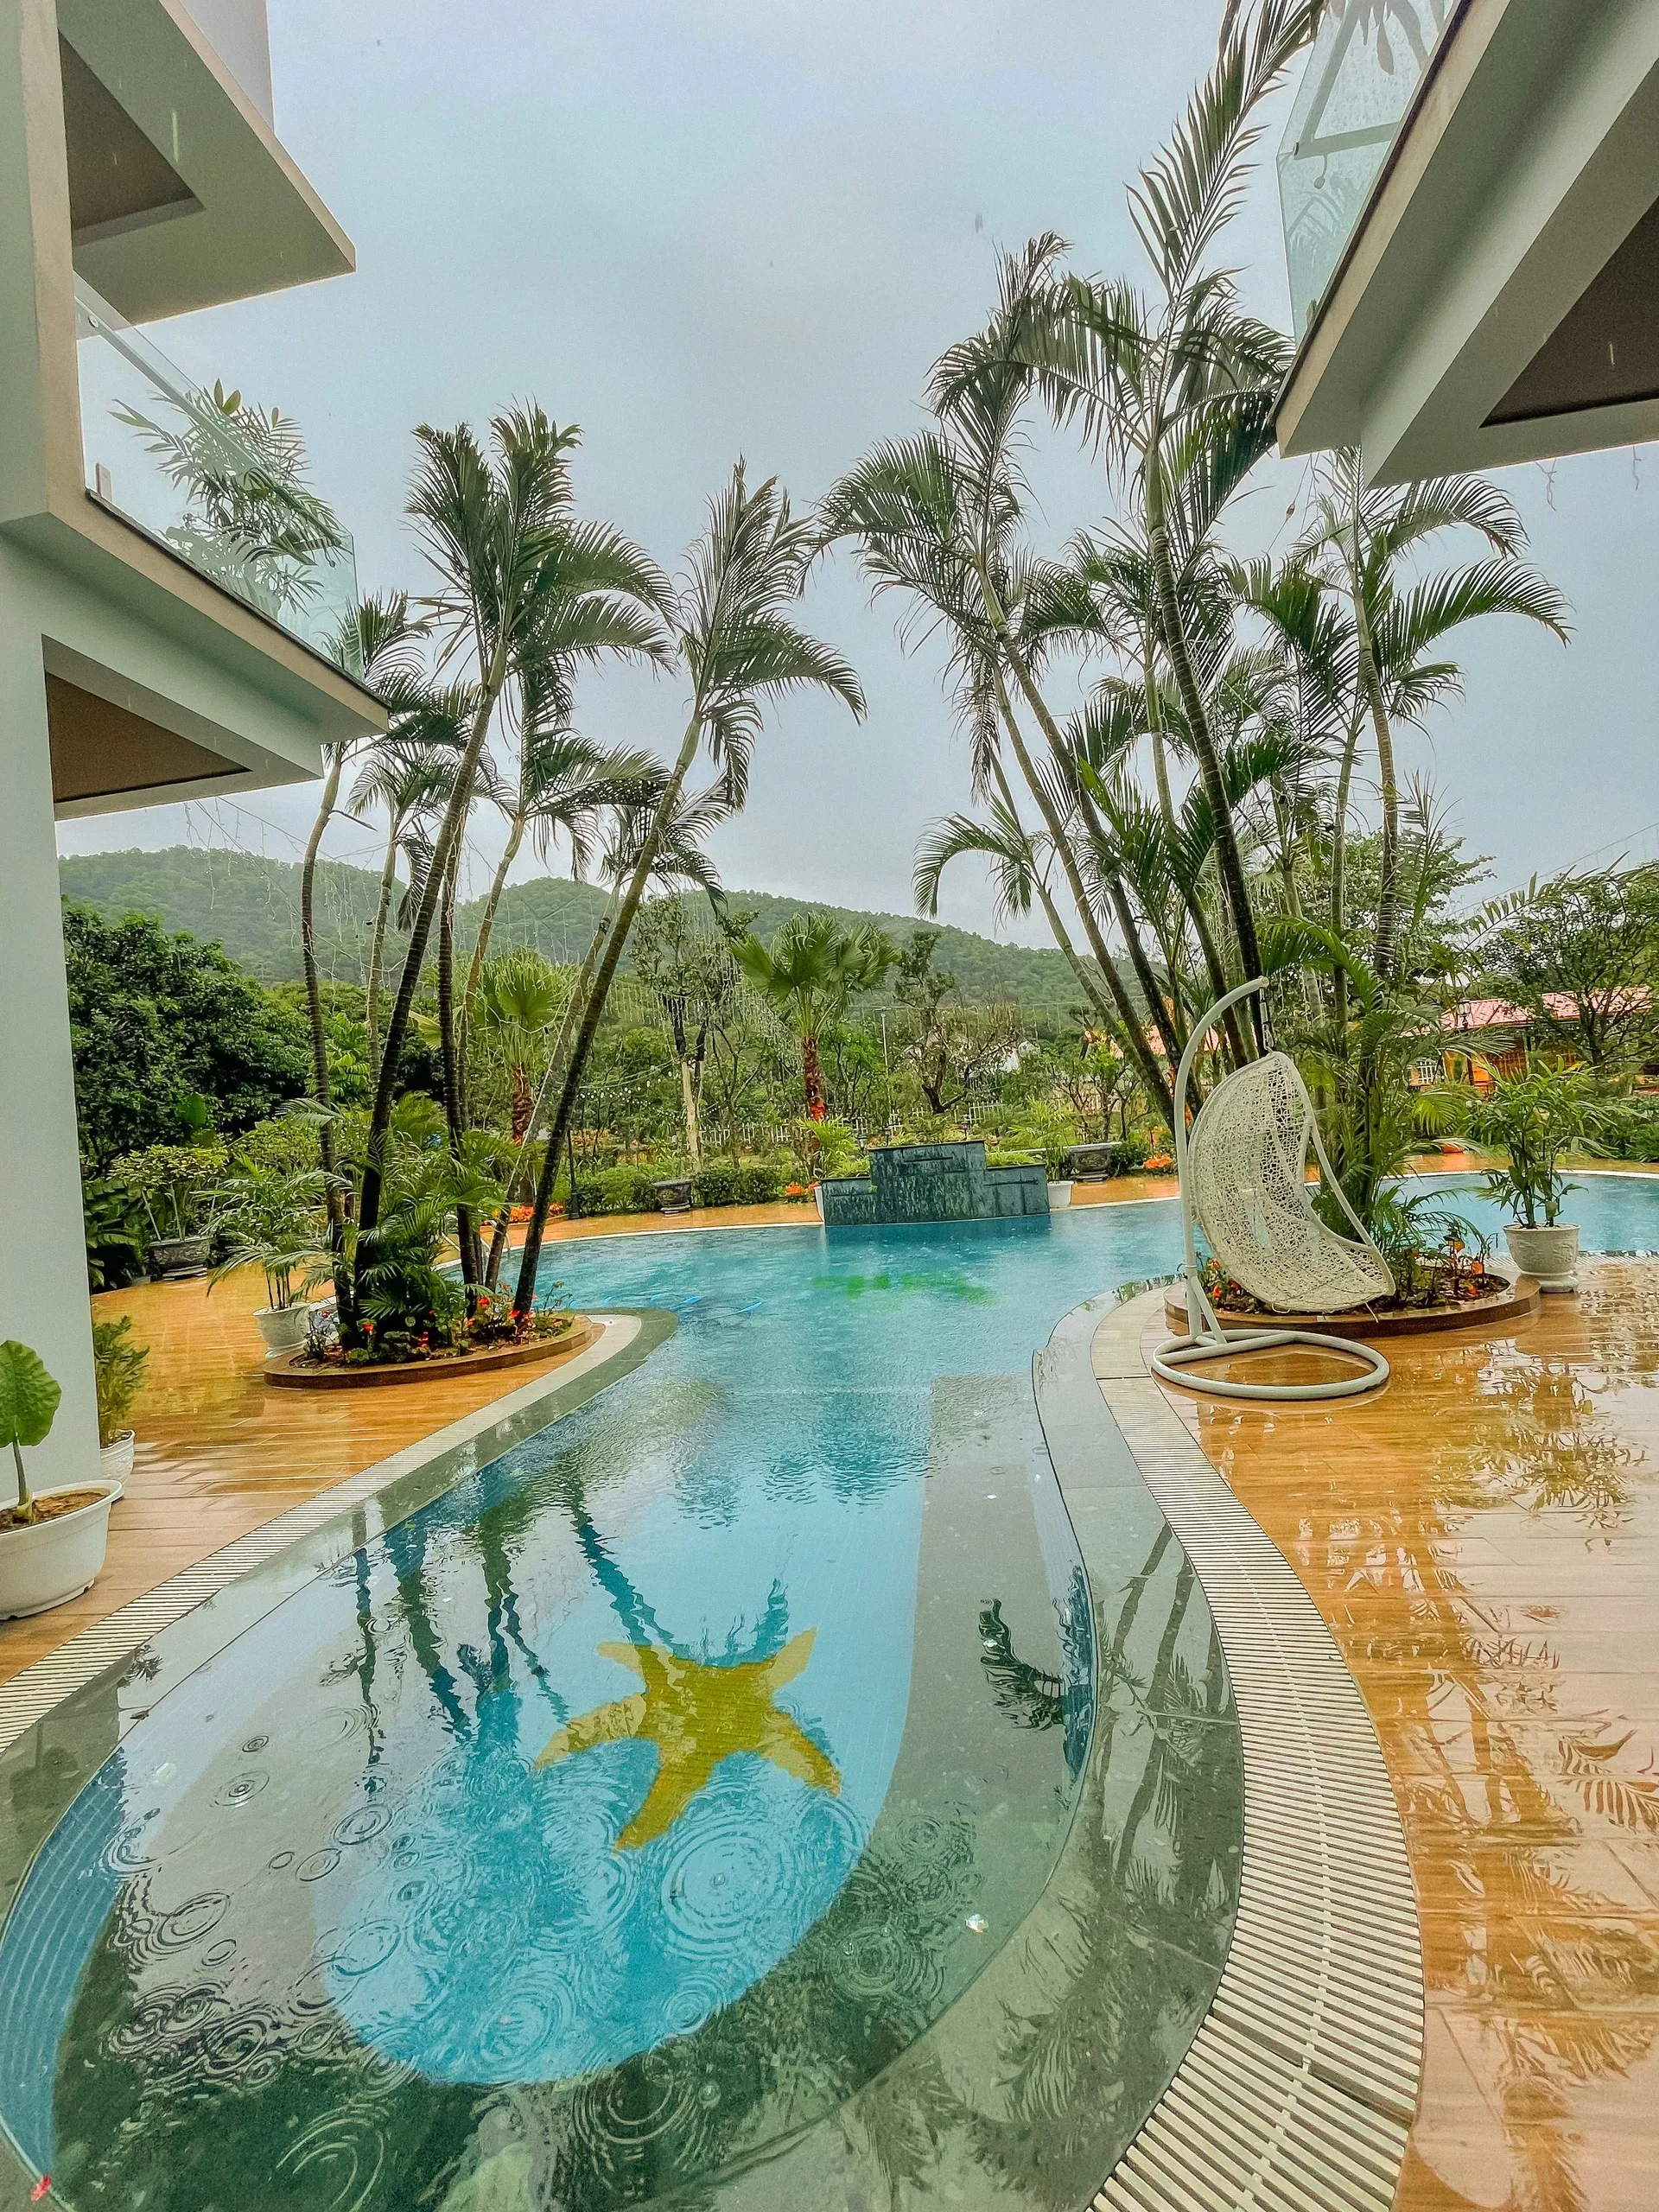 Bể bơi Trâm Villa Sóc Sơn